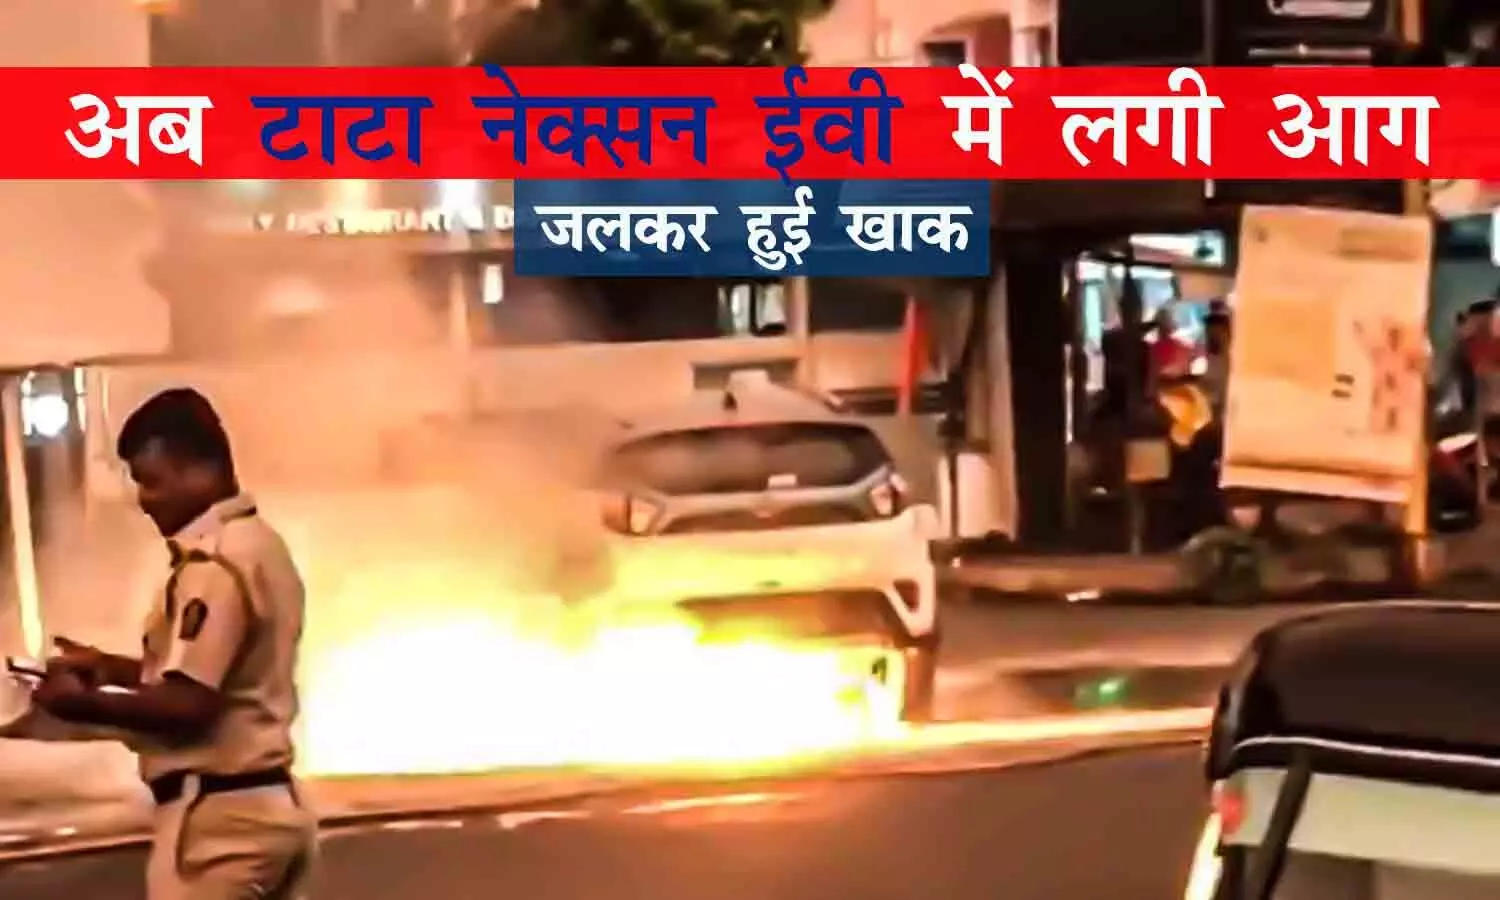 Tata Nexon EV catches Fire